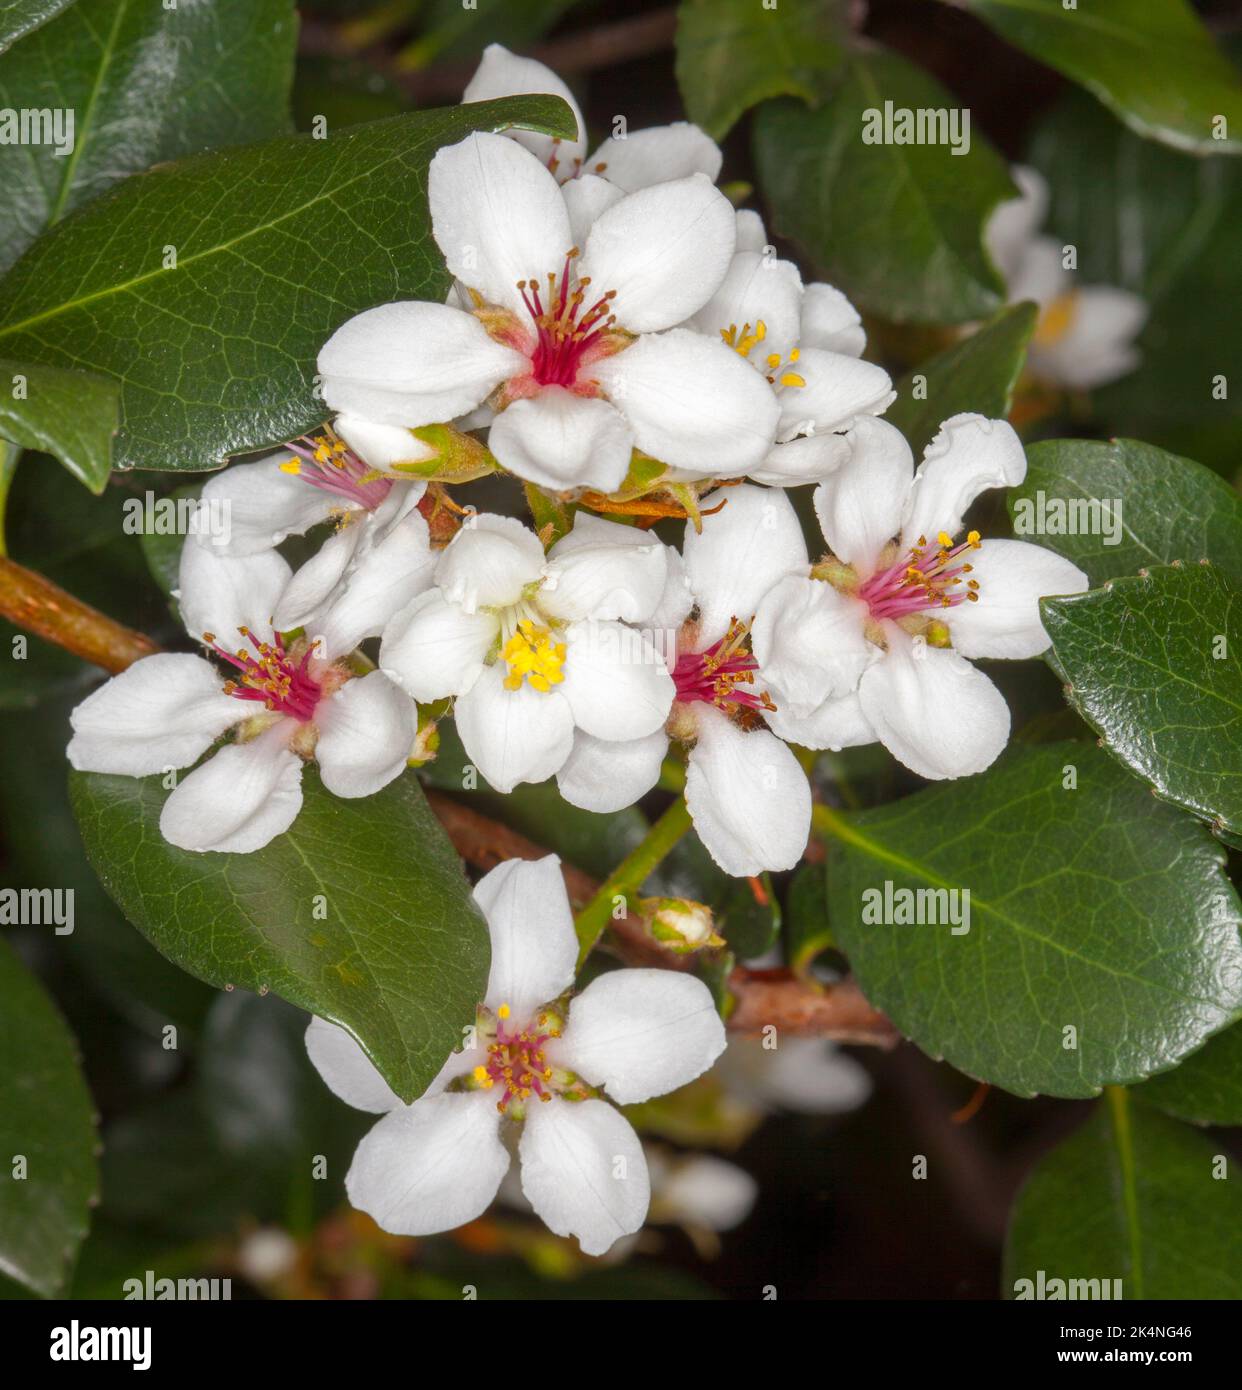 Grappolo di fiori profumati bianchi di Rhaphiolepsis indica, biancospino indiano, un arbusto sempreverde, contro le foglie verdi lucide, in Australia Foto Stock